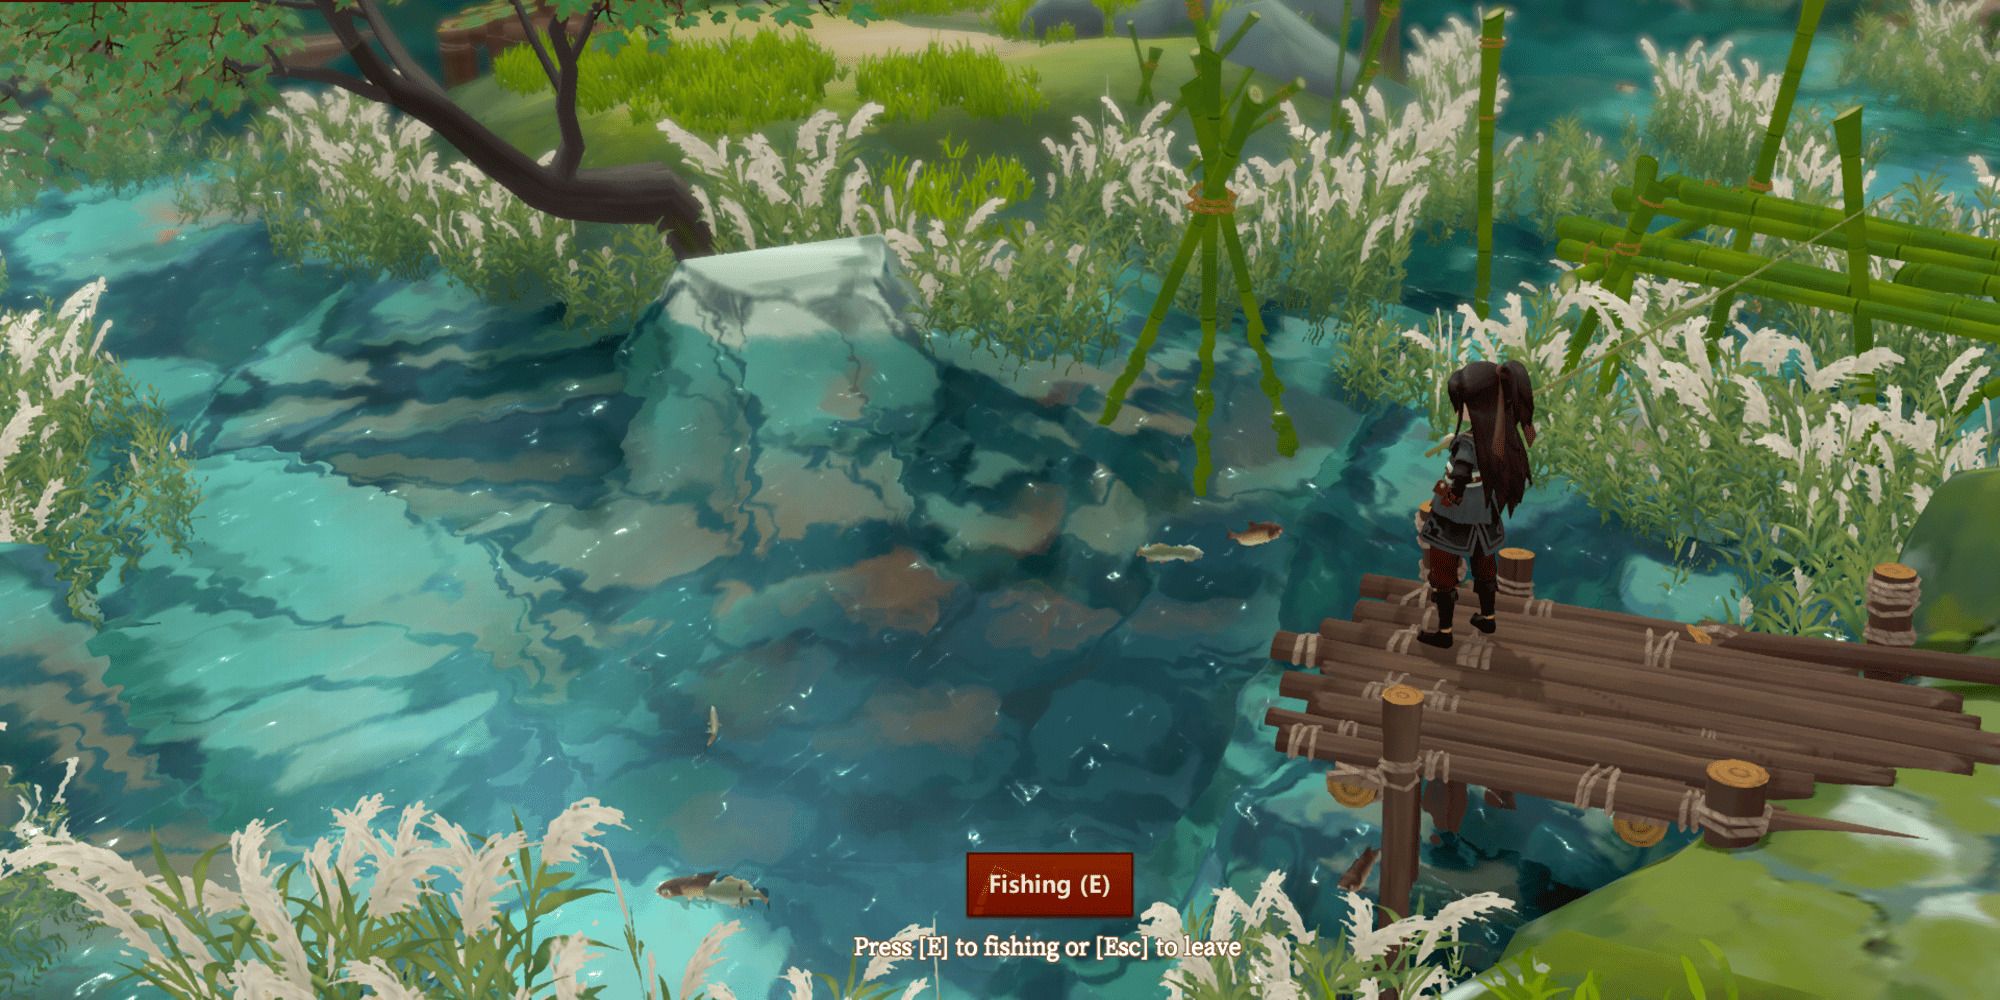 playable character fishing at pond